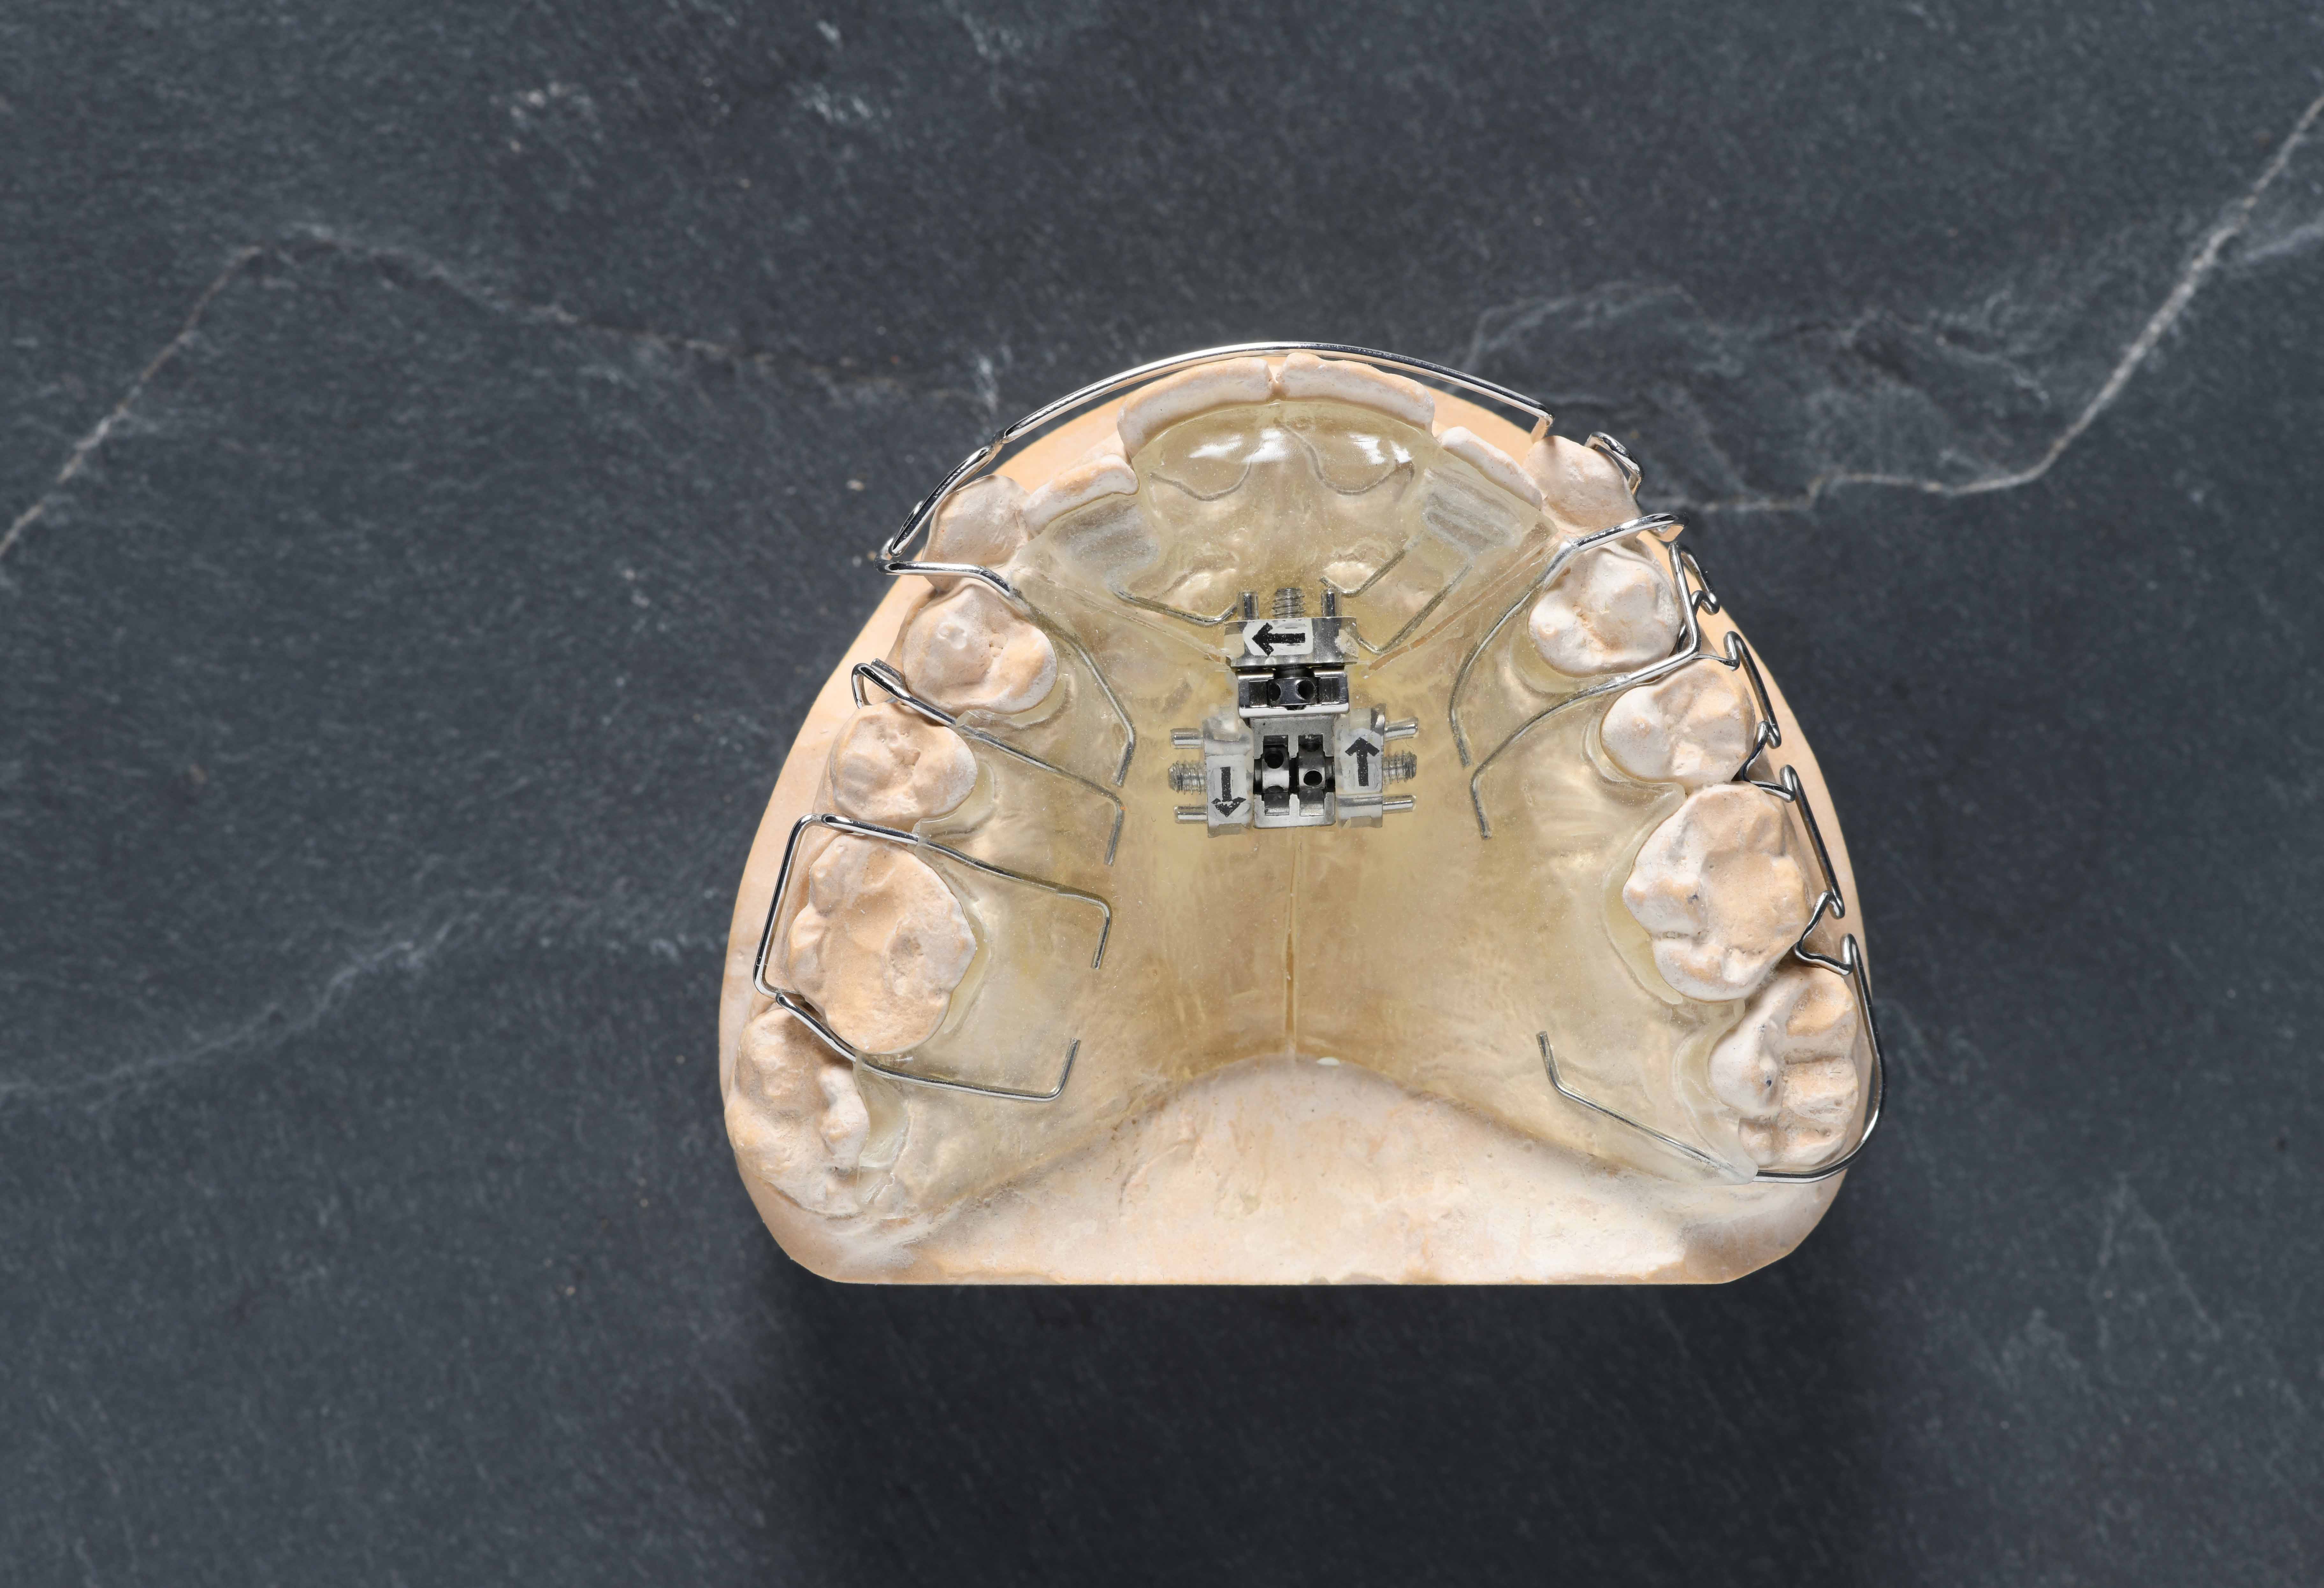 黒い台の上に矯正器具が付いた歯の模型が置かれている